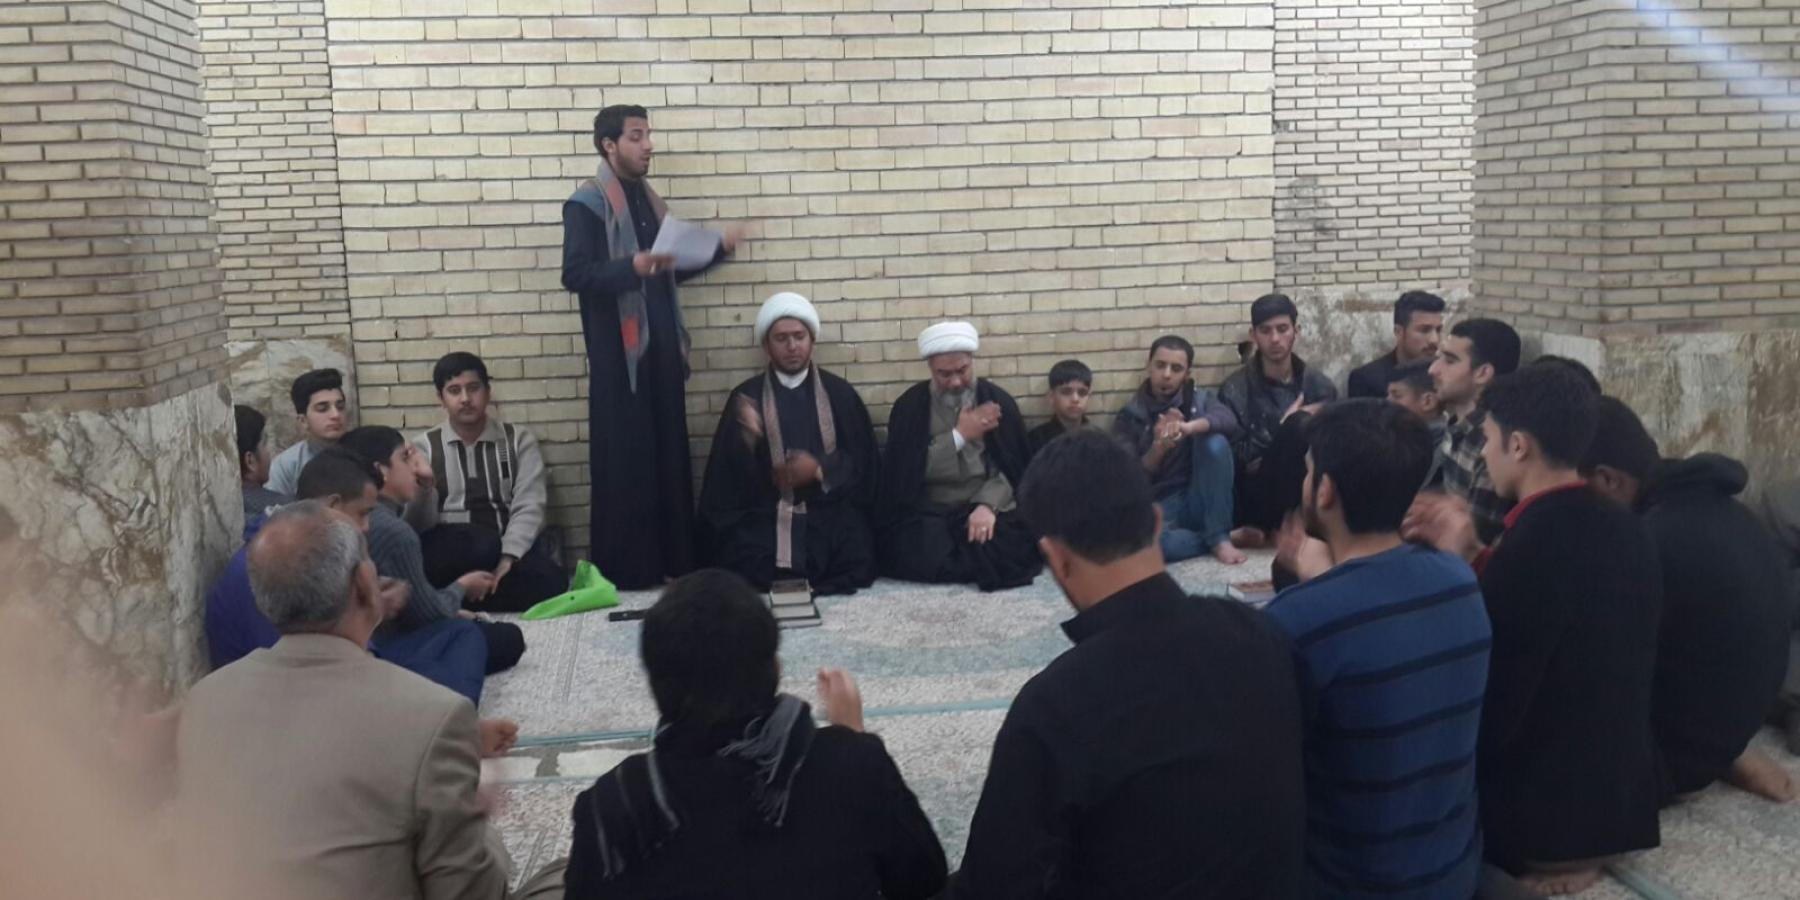 قسم الشؤون الدينية في العتبة العلوية المقدسة ينفّذ برنامجاً عقائدياً توجيهياً لشريحة الشباب في مسجد السهلة المعظم